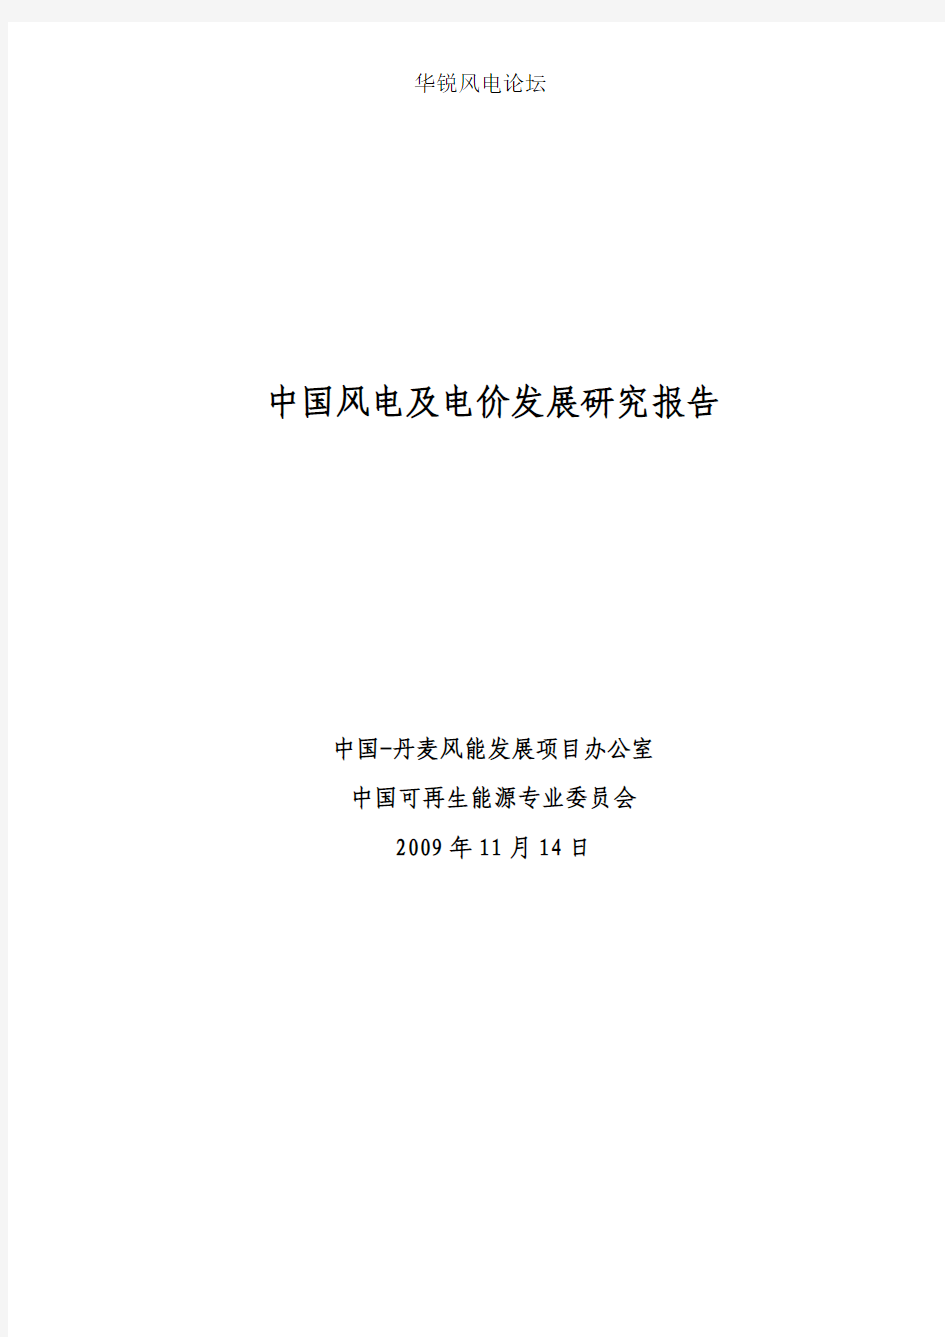 中国风电及电价发展研究报告(2009[1].11.14)